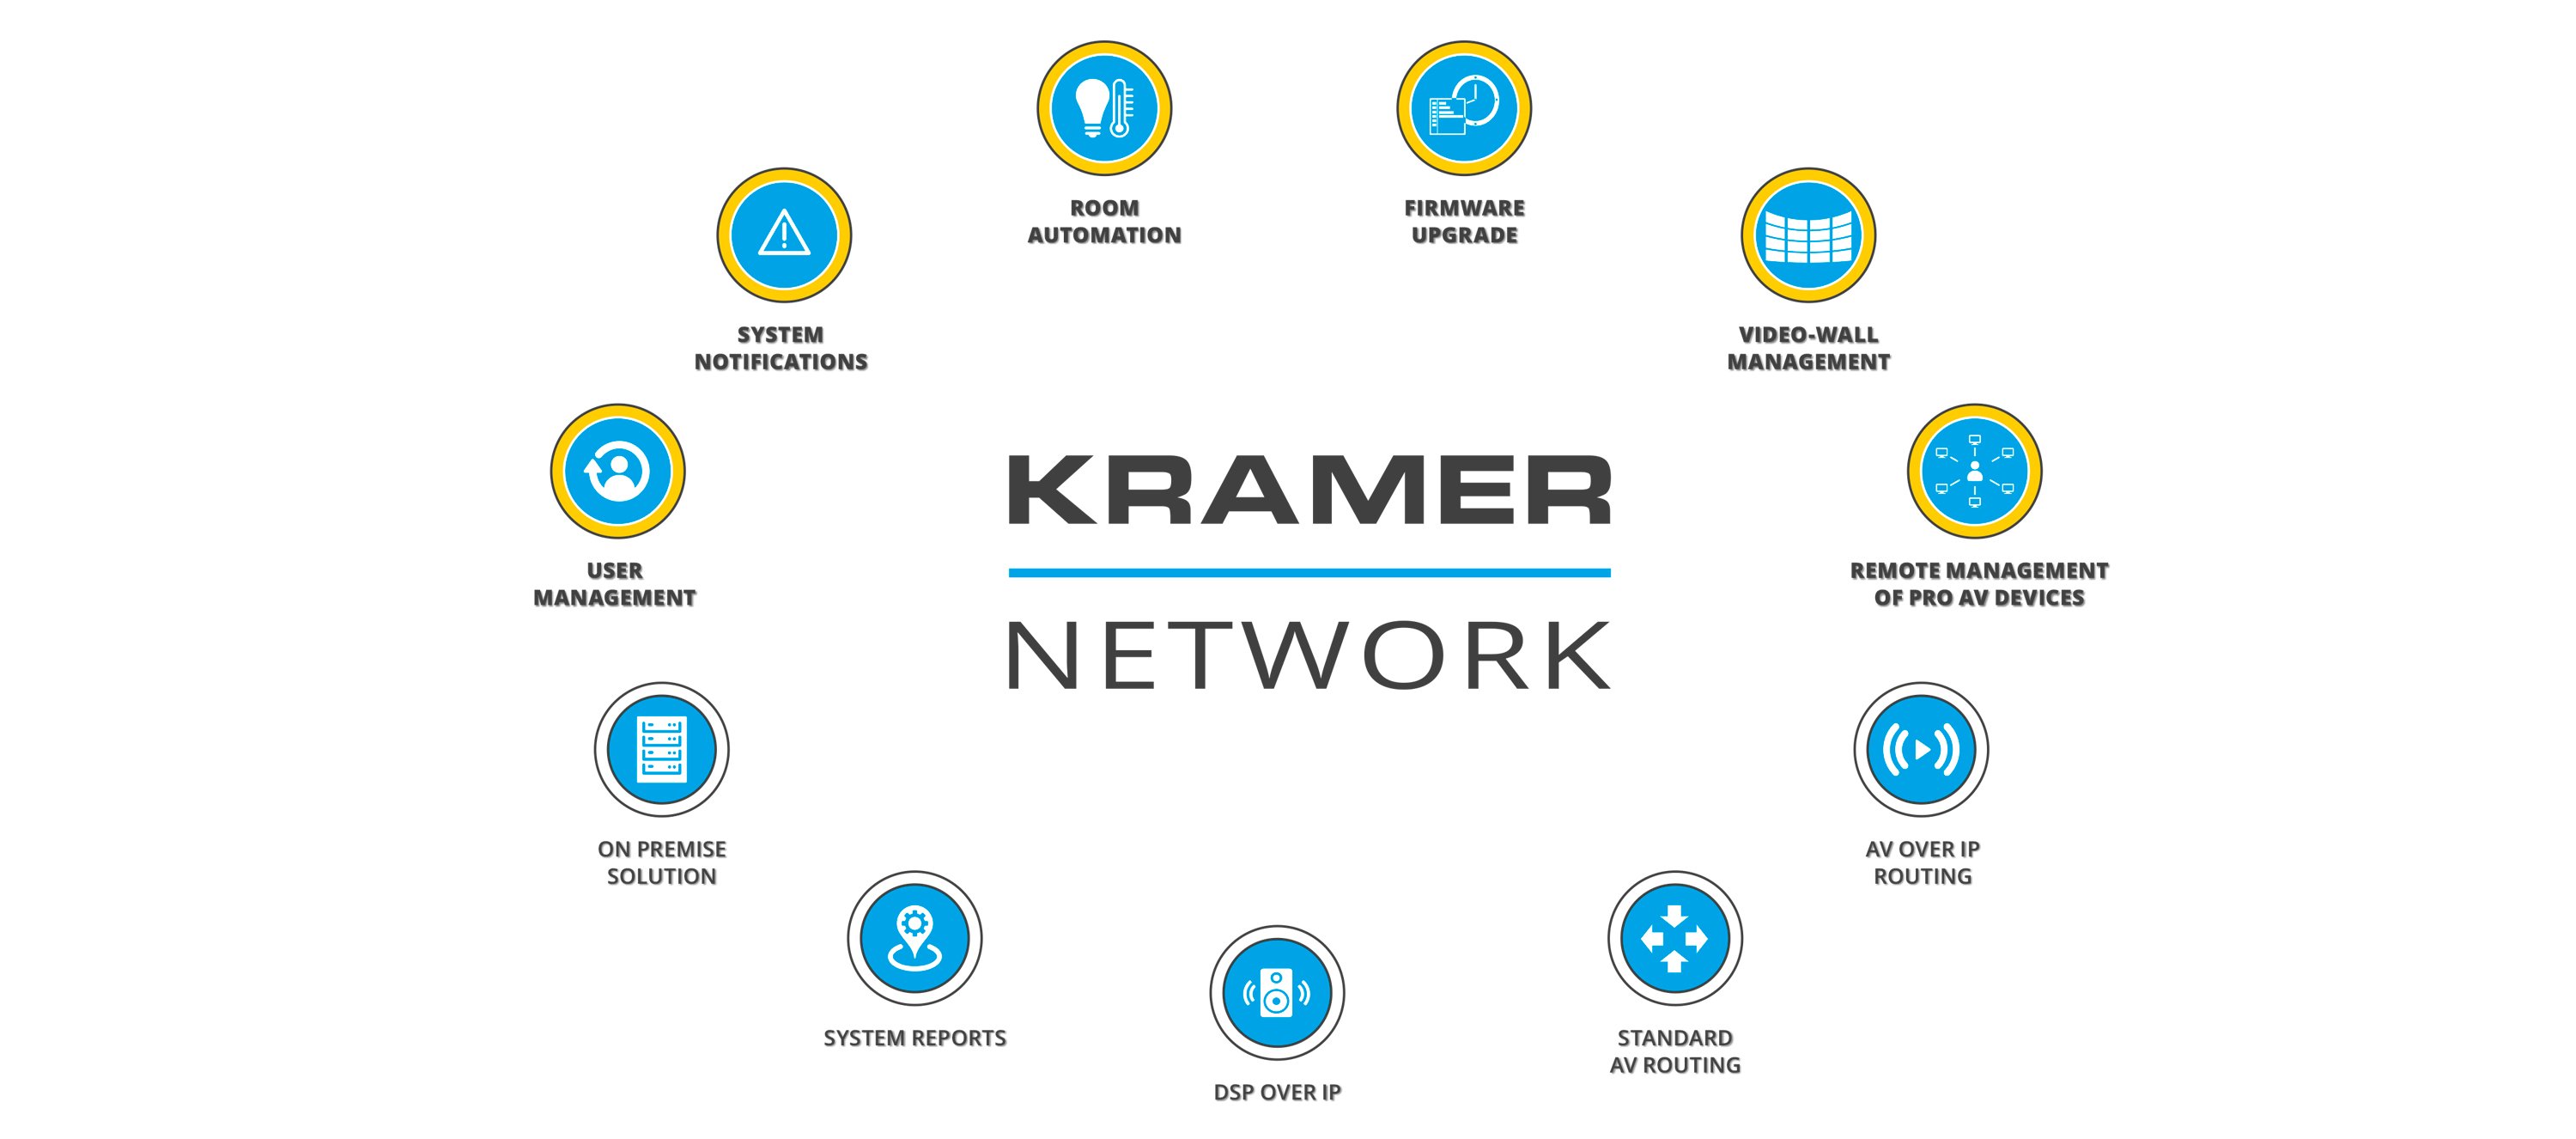 Kramer Network